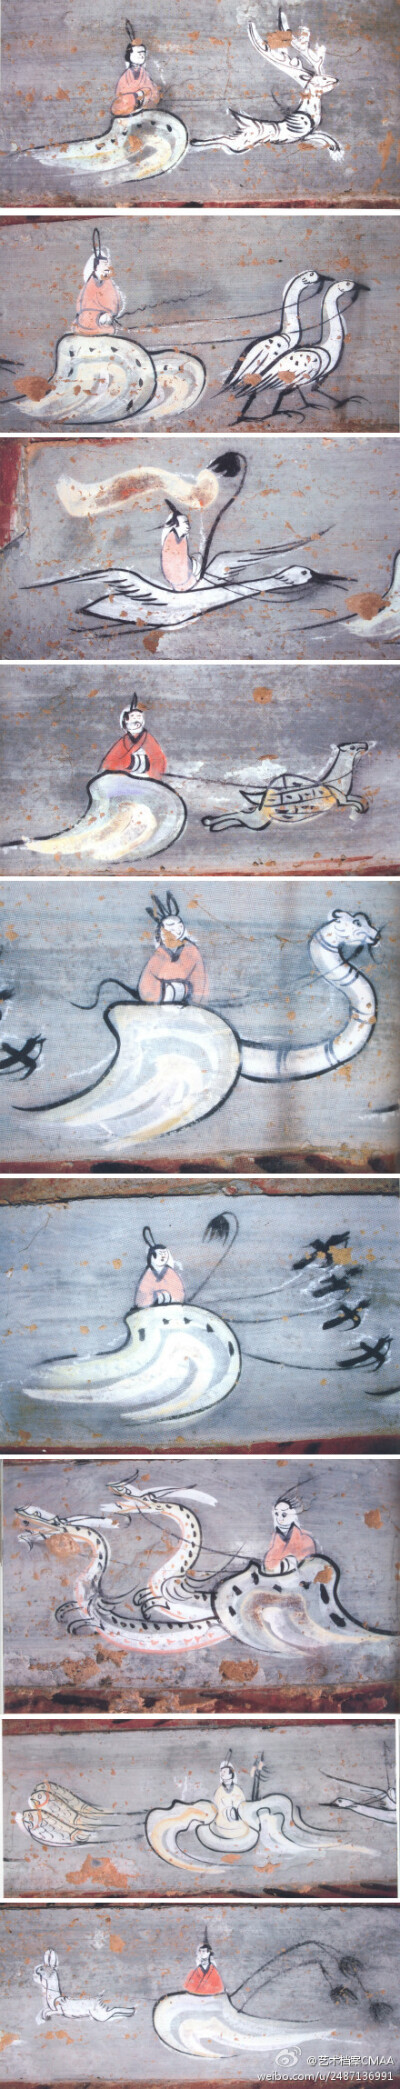 【中国古代艺术】在神仙的世界里，各种动物皆可作为拉车的劳力。此为陕西杨桥畔东汉墓的墓室壁画。 ​​​​